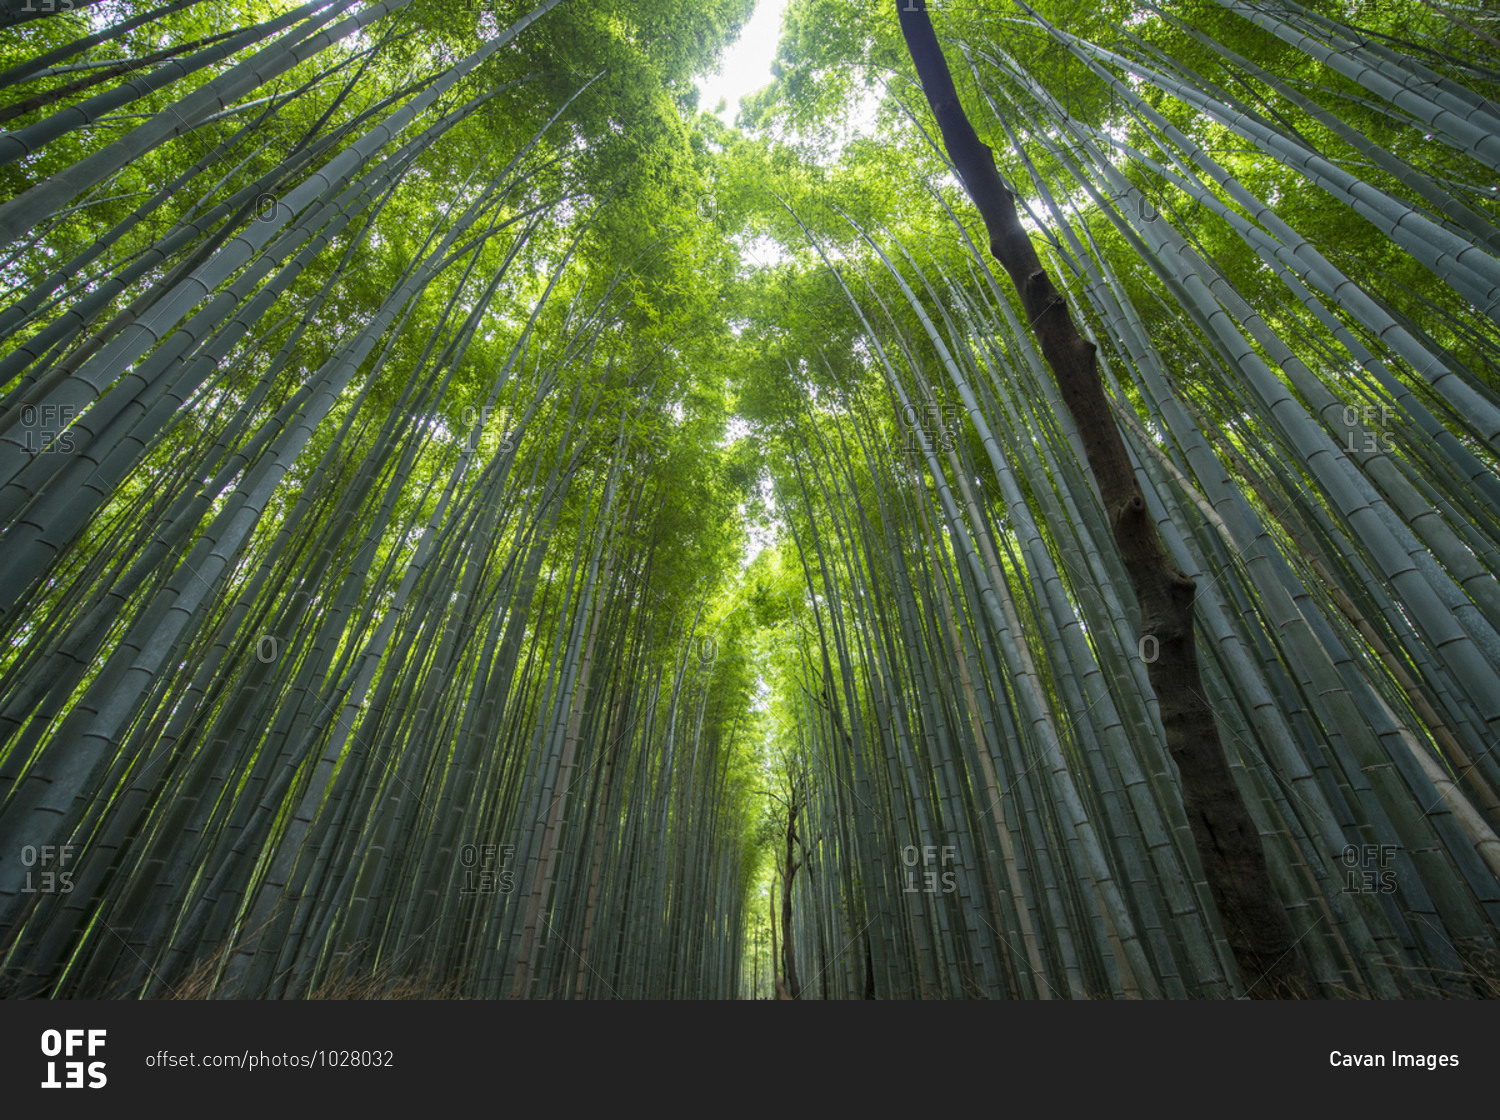 Bamboo forest at Arashiyama Bamboo Groove near Kyoto